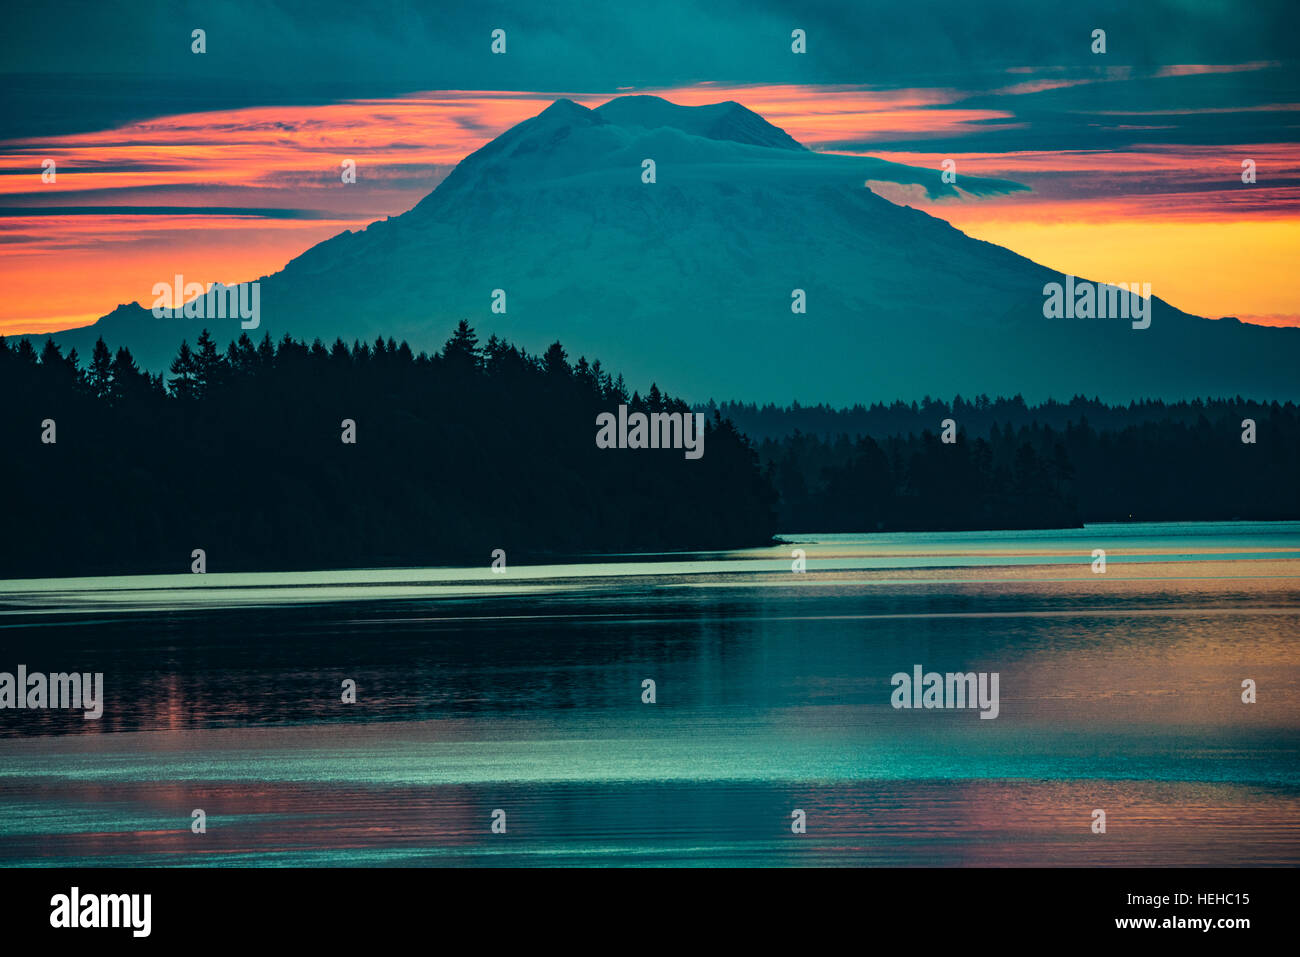 Morning Sunrise over Majestic Mount Rainier and the Puget Sound, Washington, USA Stock Photo